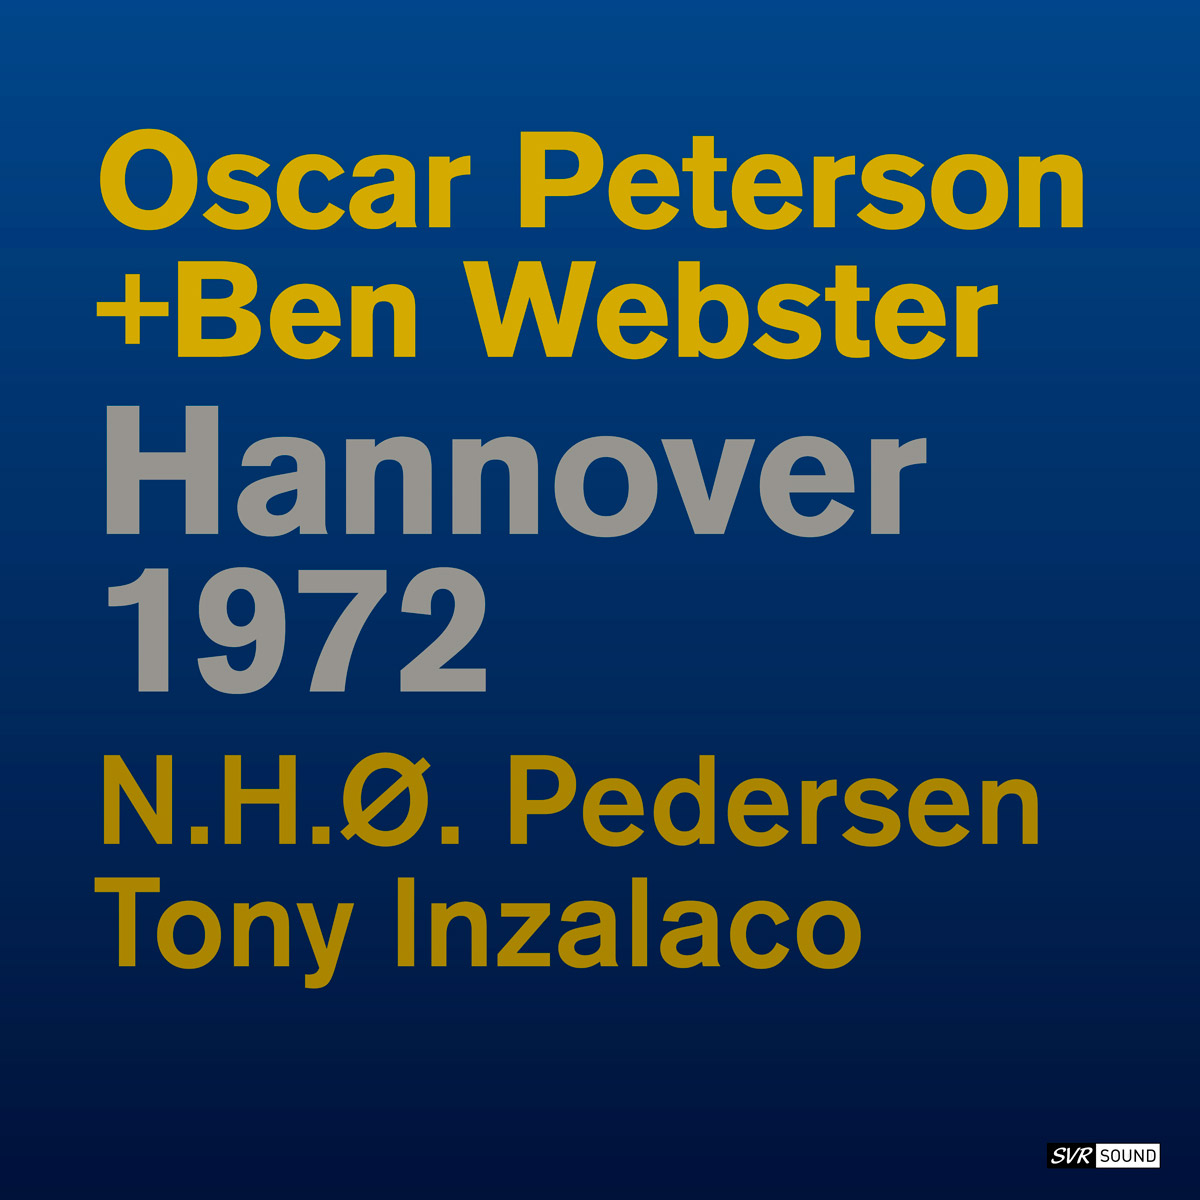 Oscar Peterson + Ben Webster - Hannover 1972